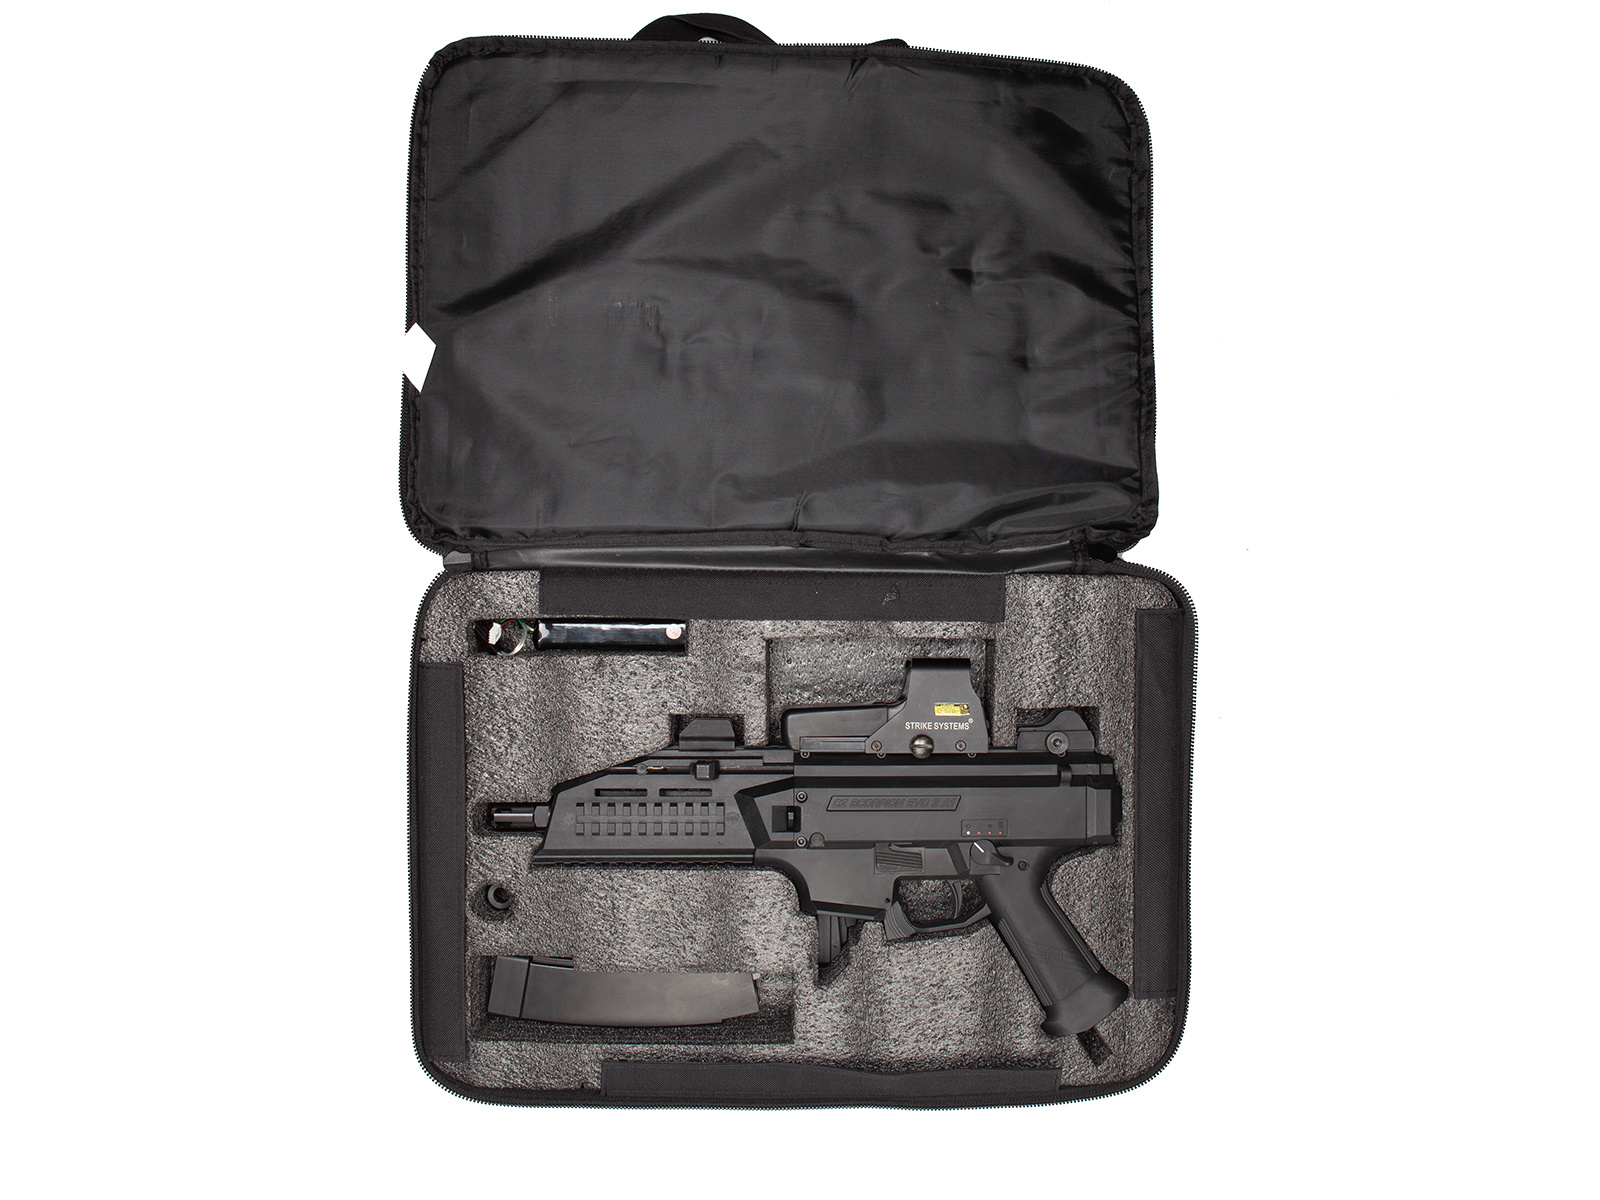 ASG Bolsa para rifle Scorpion Bag EVO 3 A1 - BK